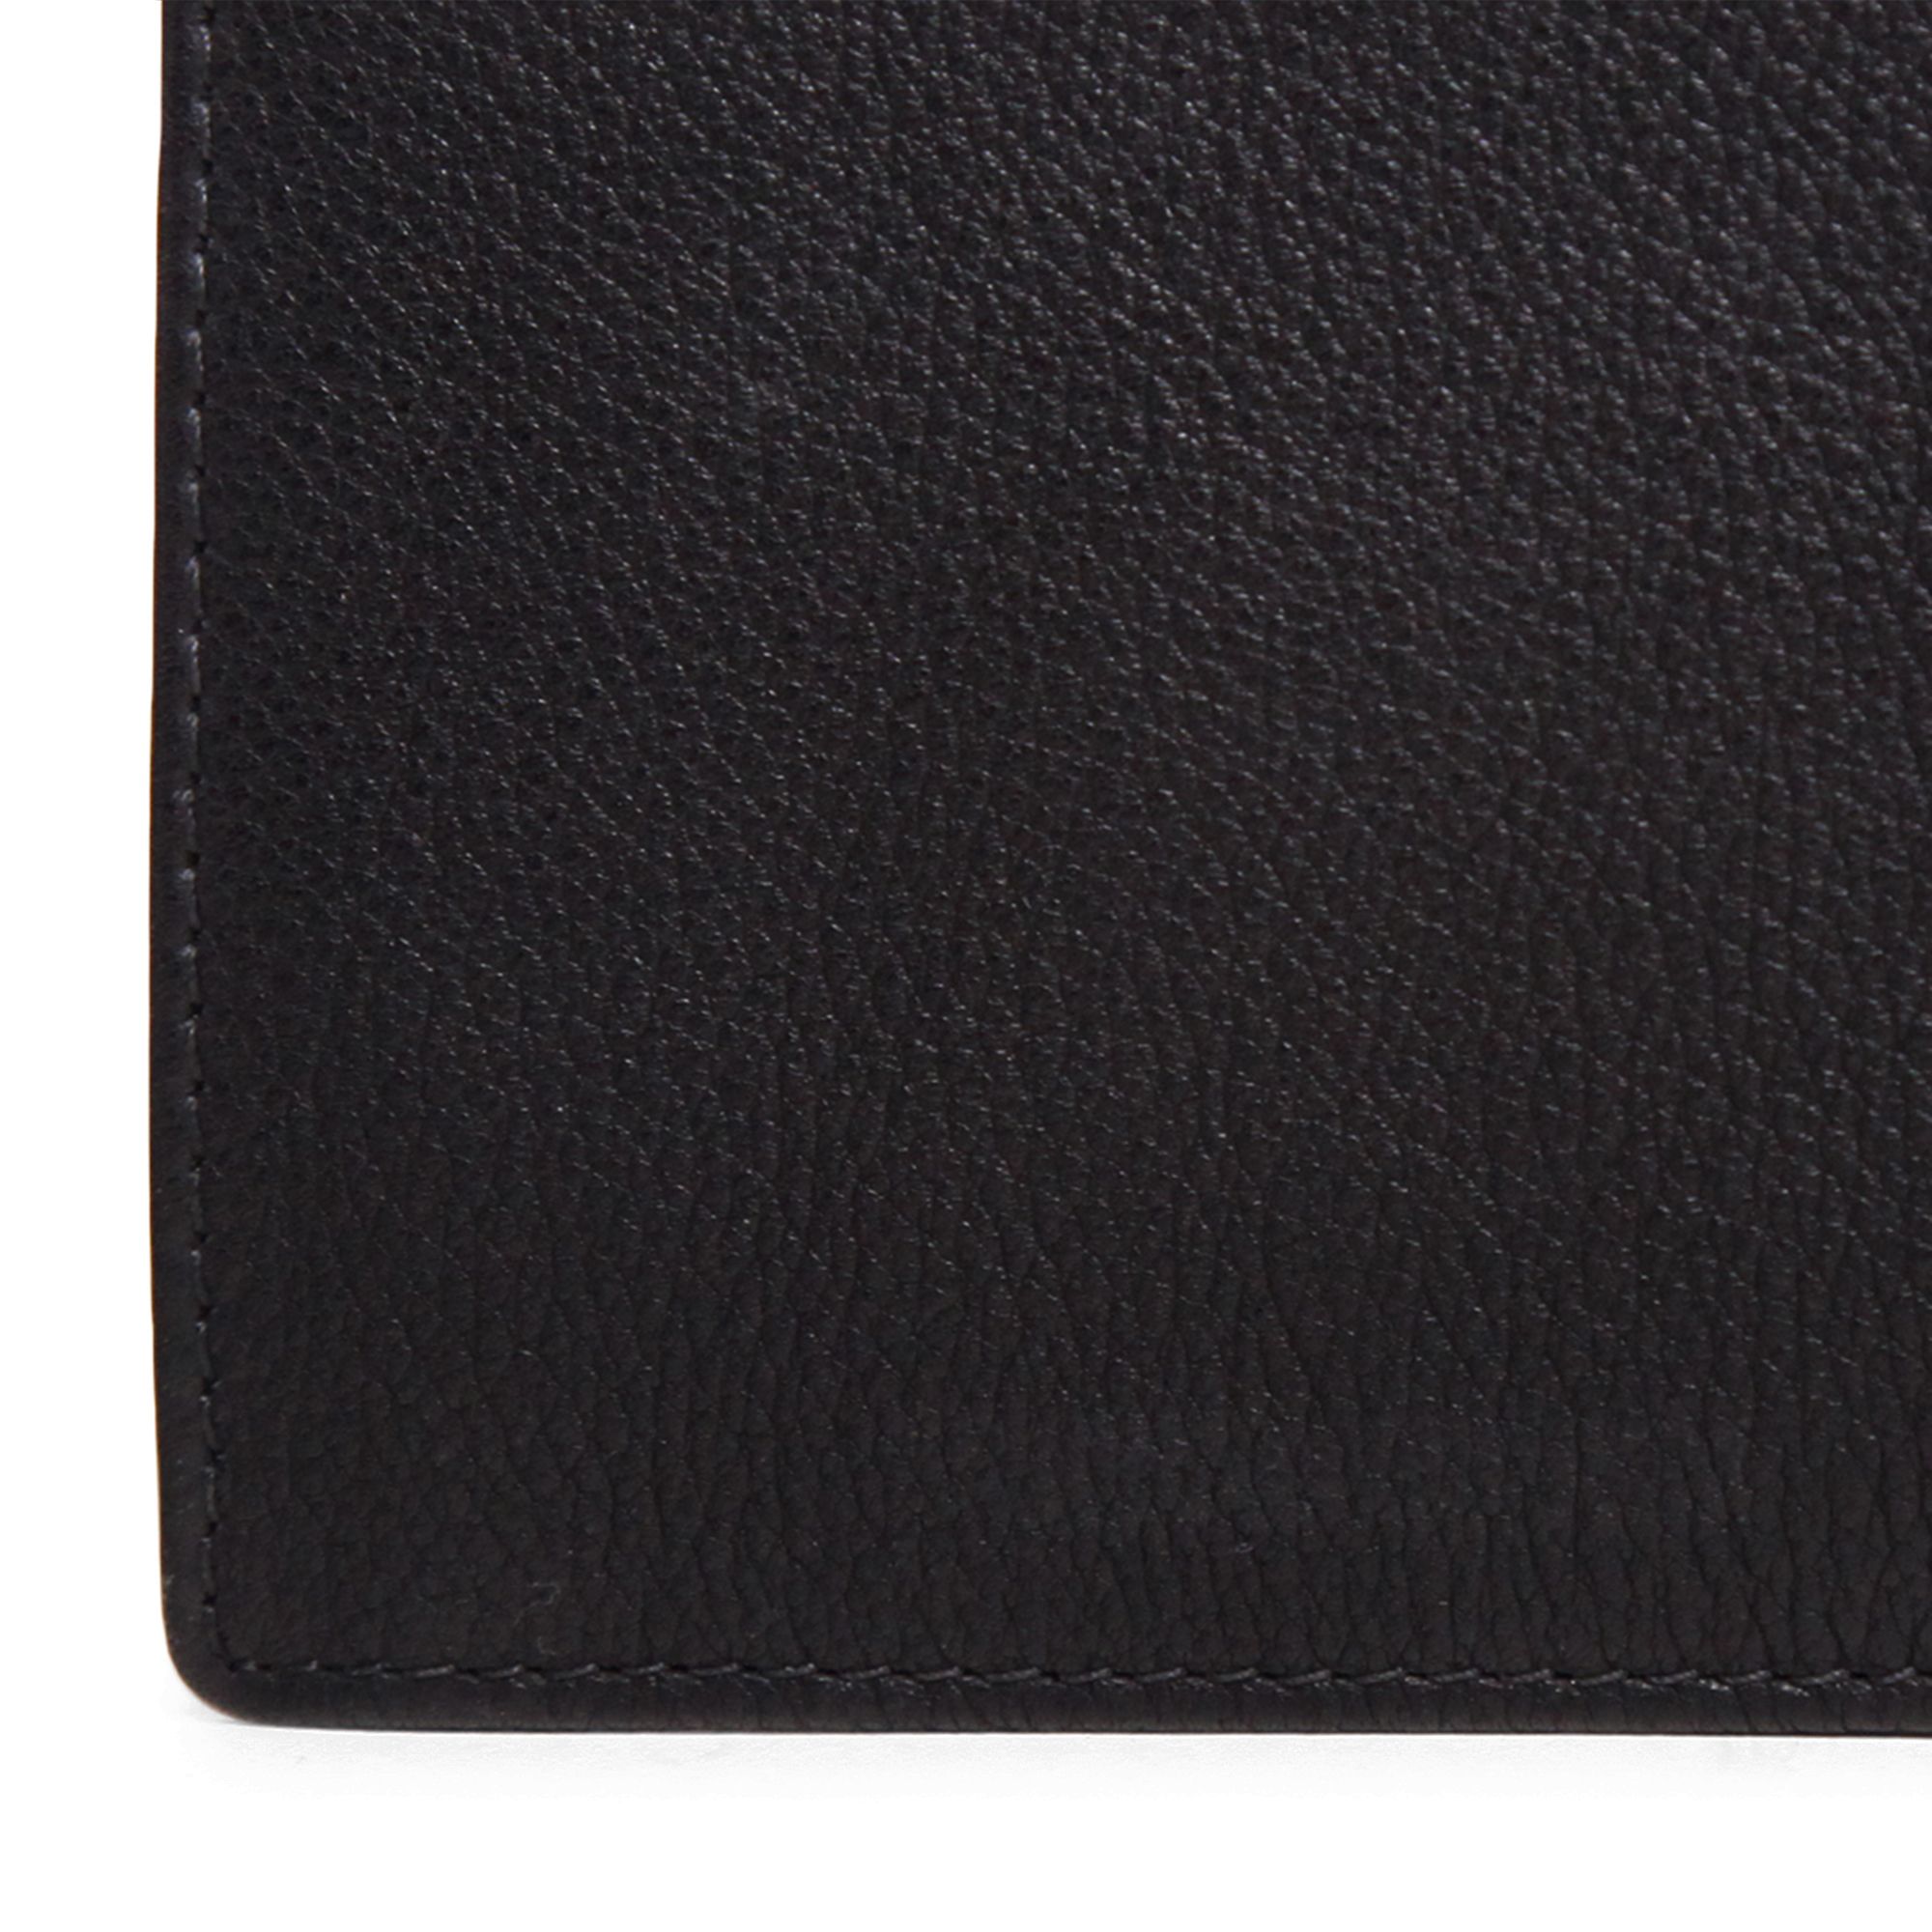 Black bifold leather wallet for men